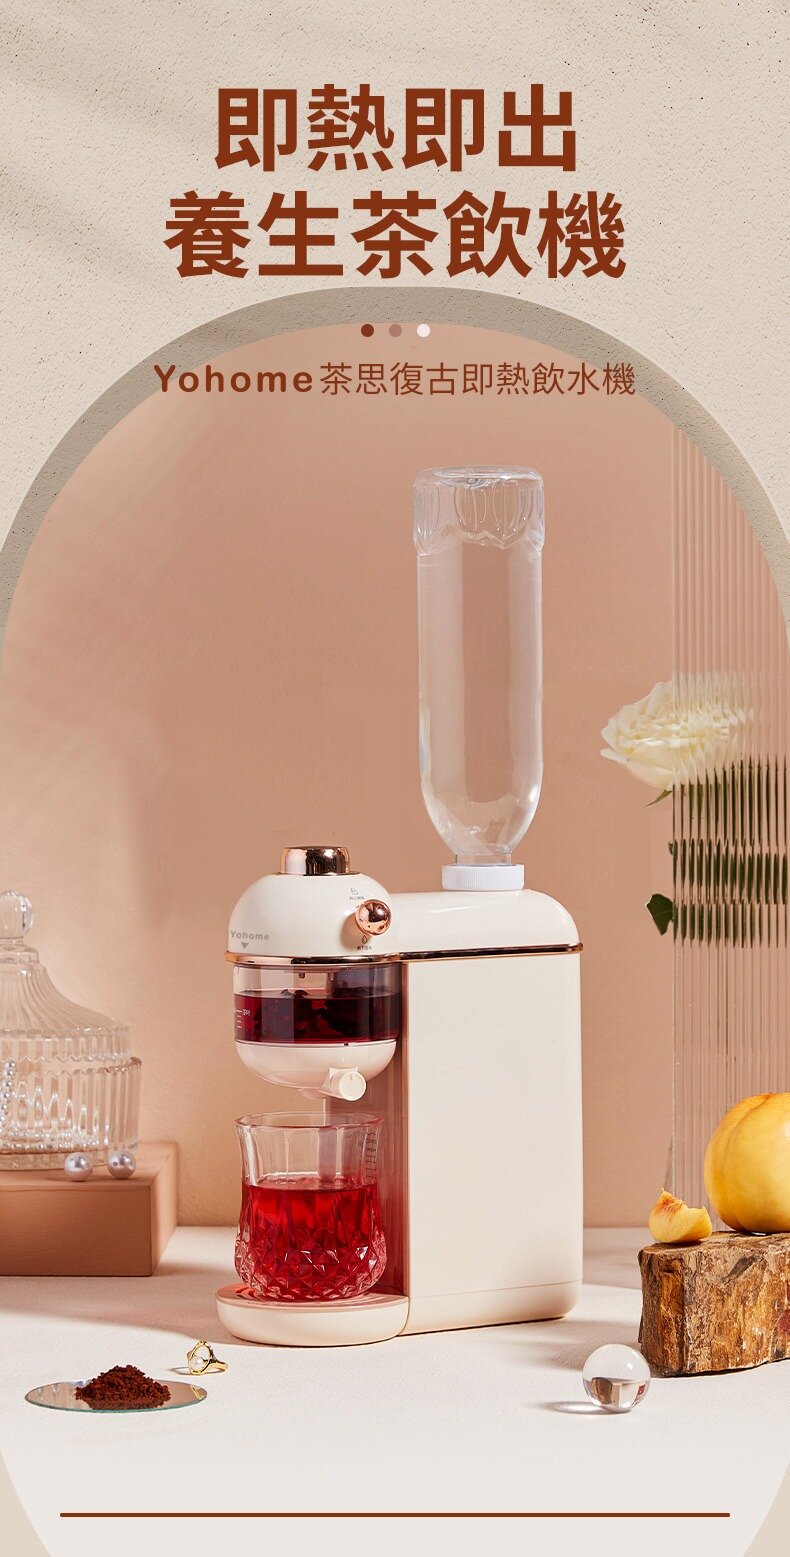 【已停產】Yohome RG-W40 茶思復古即熱飲水機